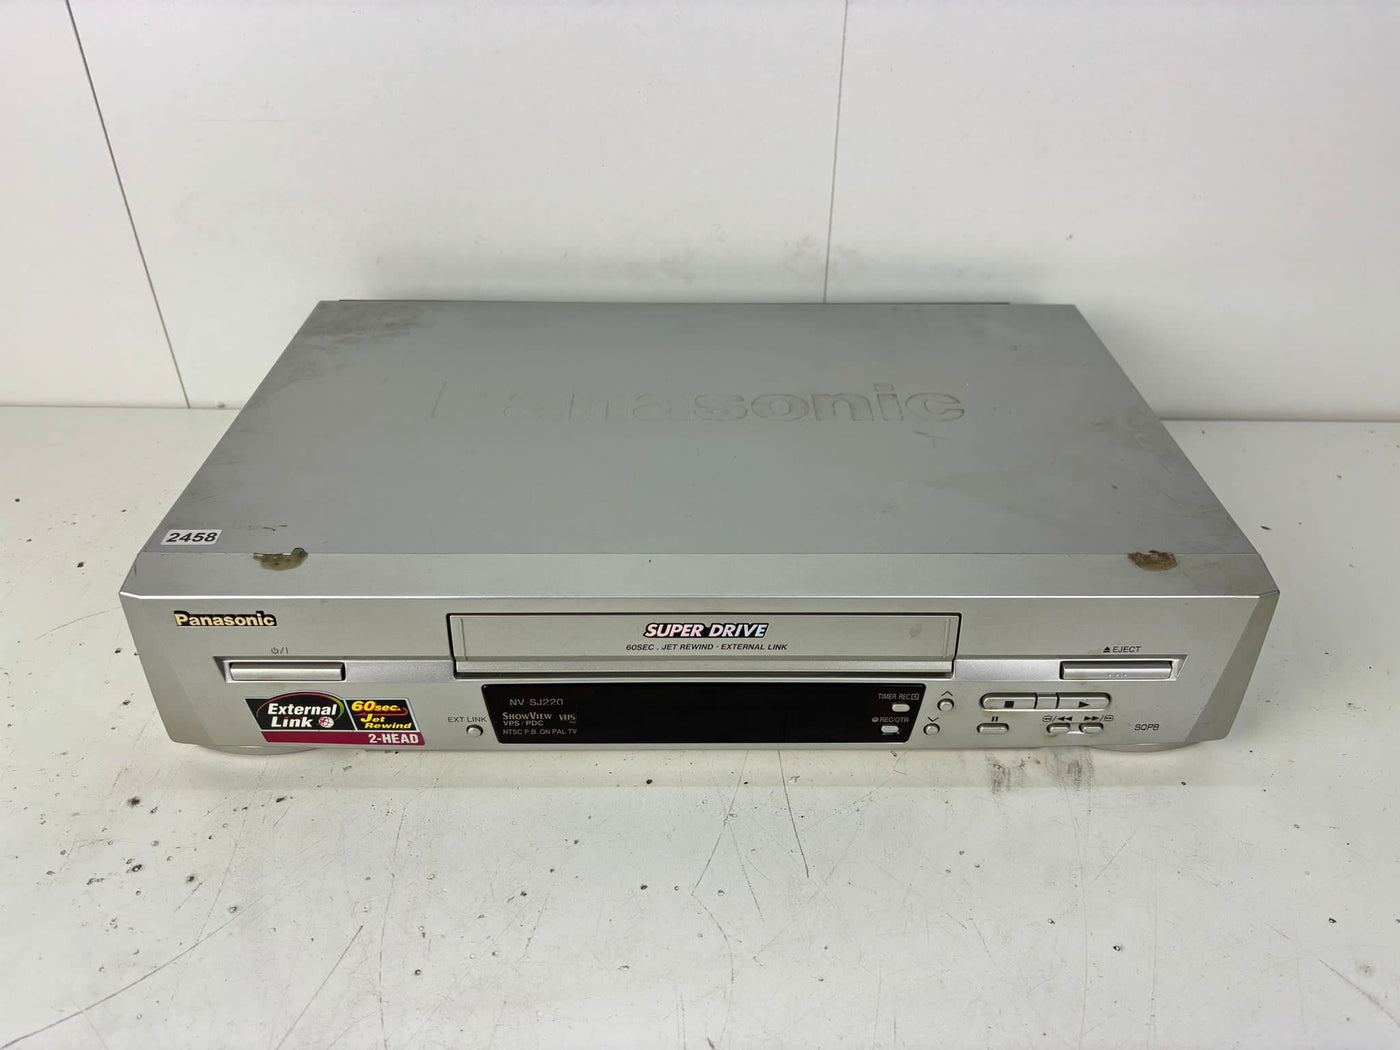 Panasonic Super Drive NV-SJ220 Video Cassette Recorder